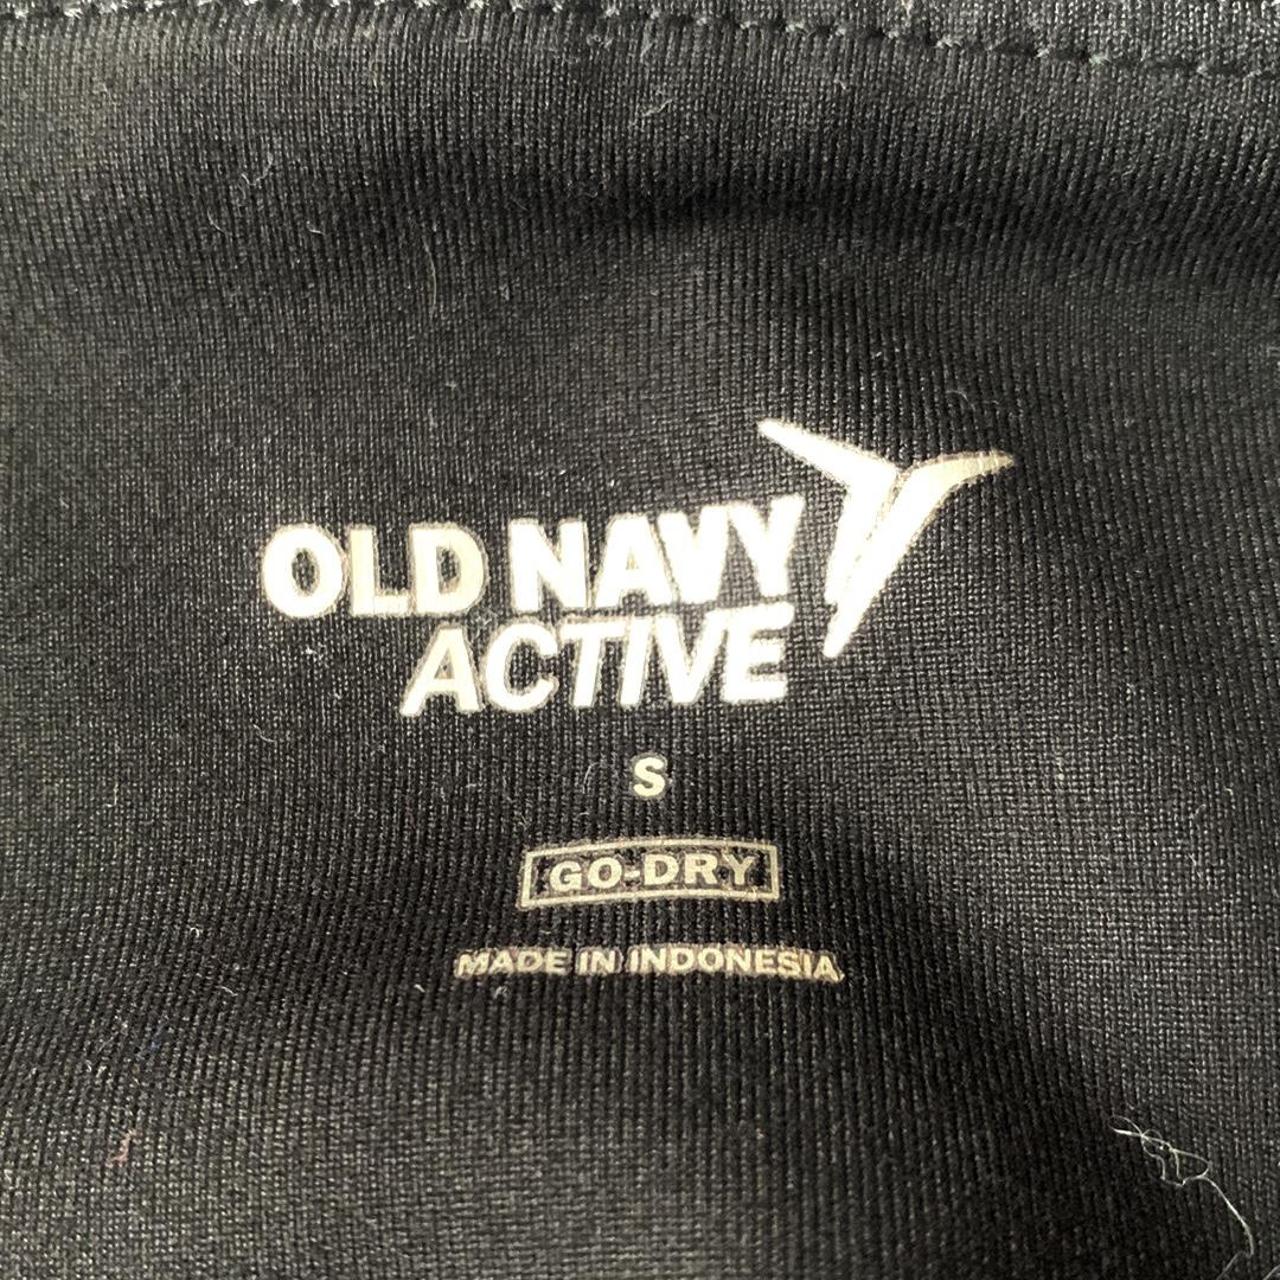 Old Navy Active Leggings!! #oldnavy #active - Depop